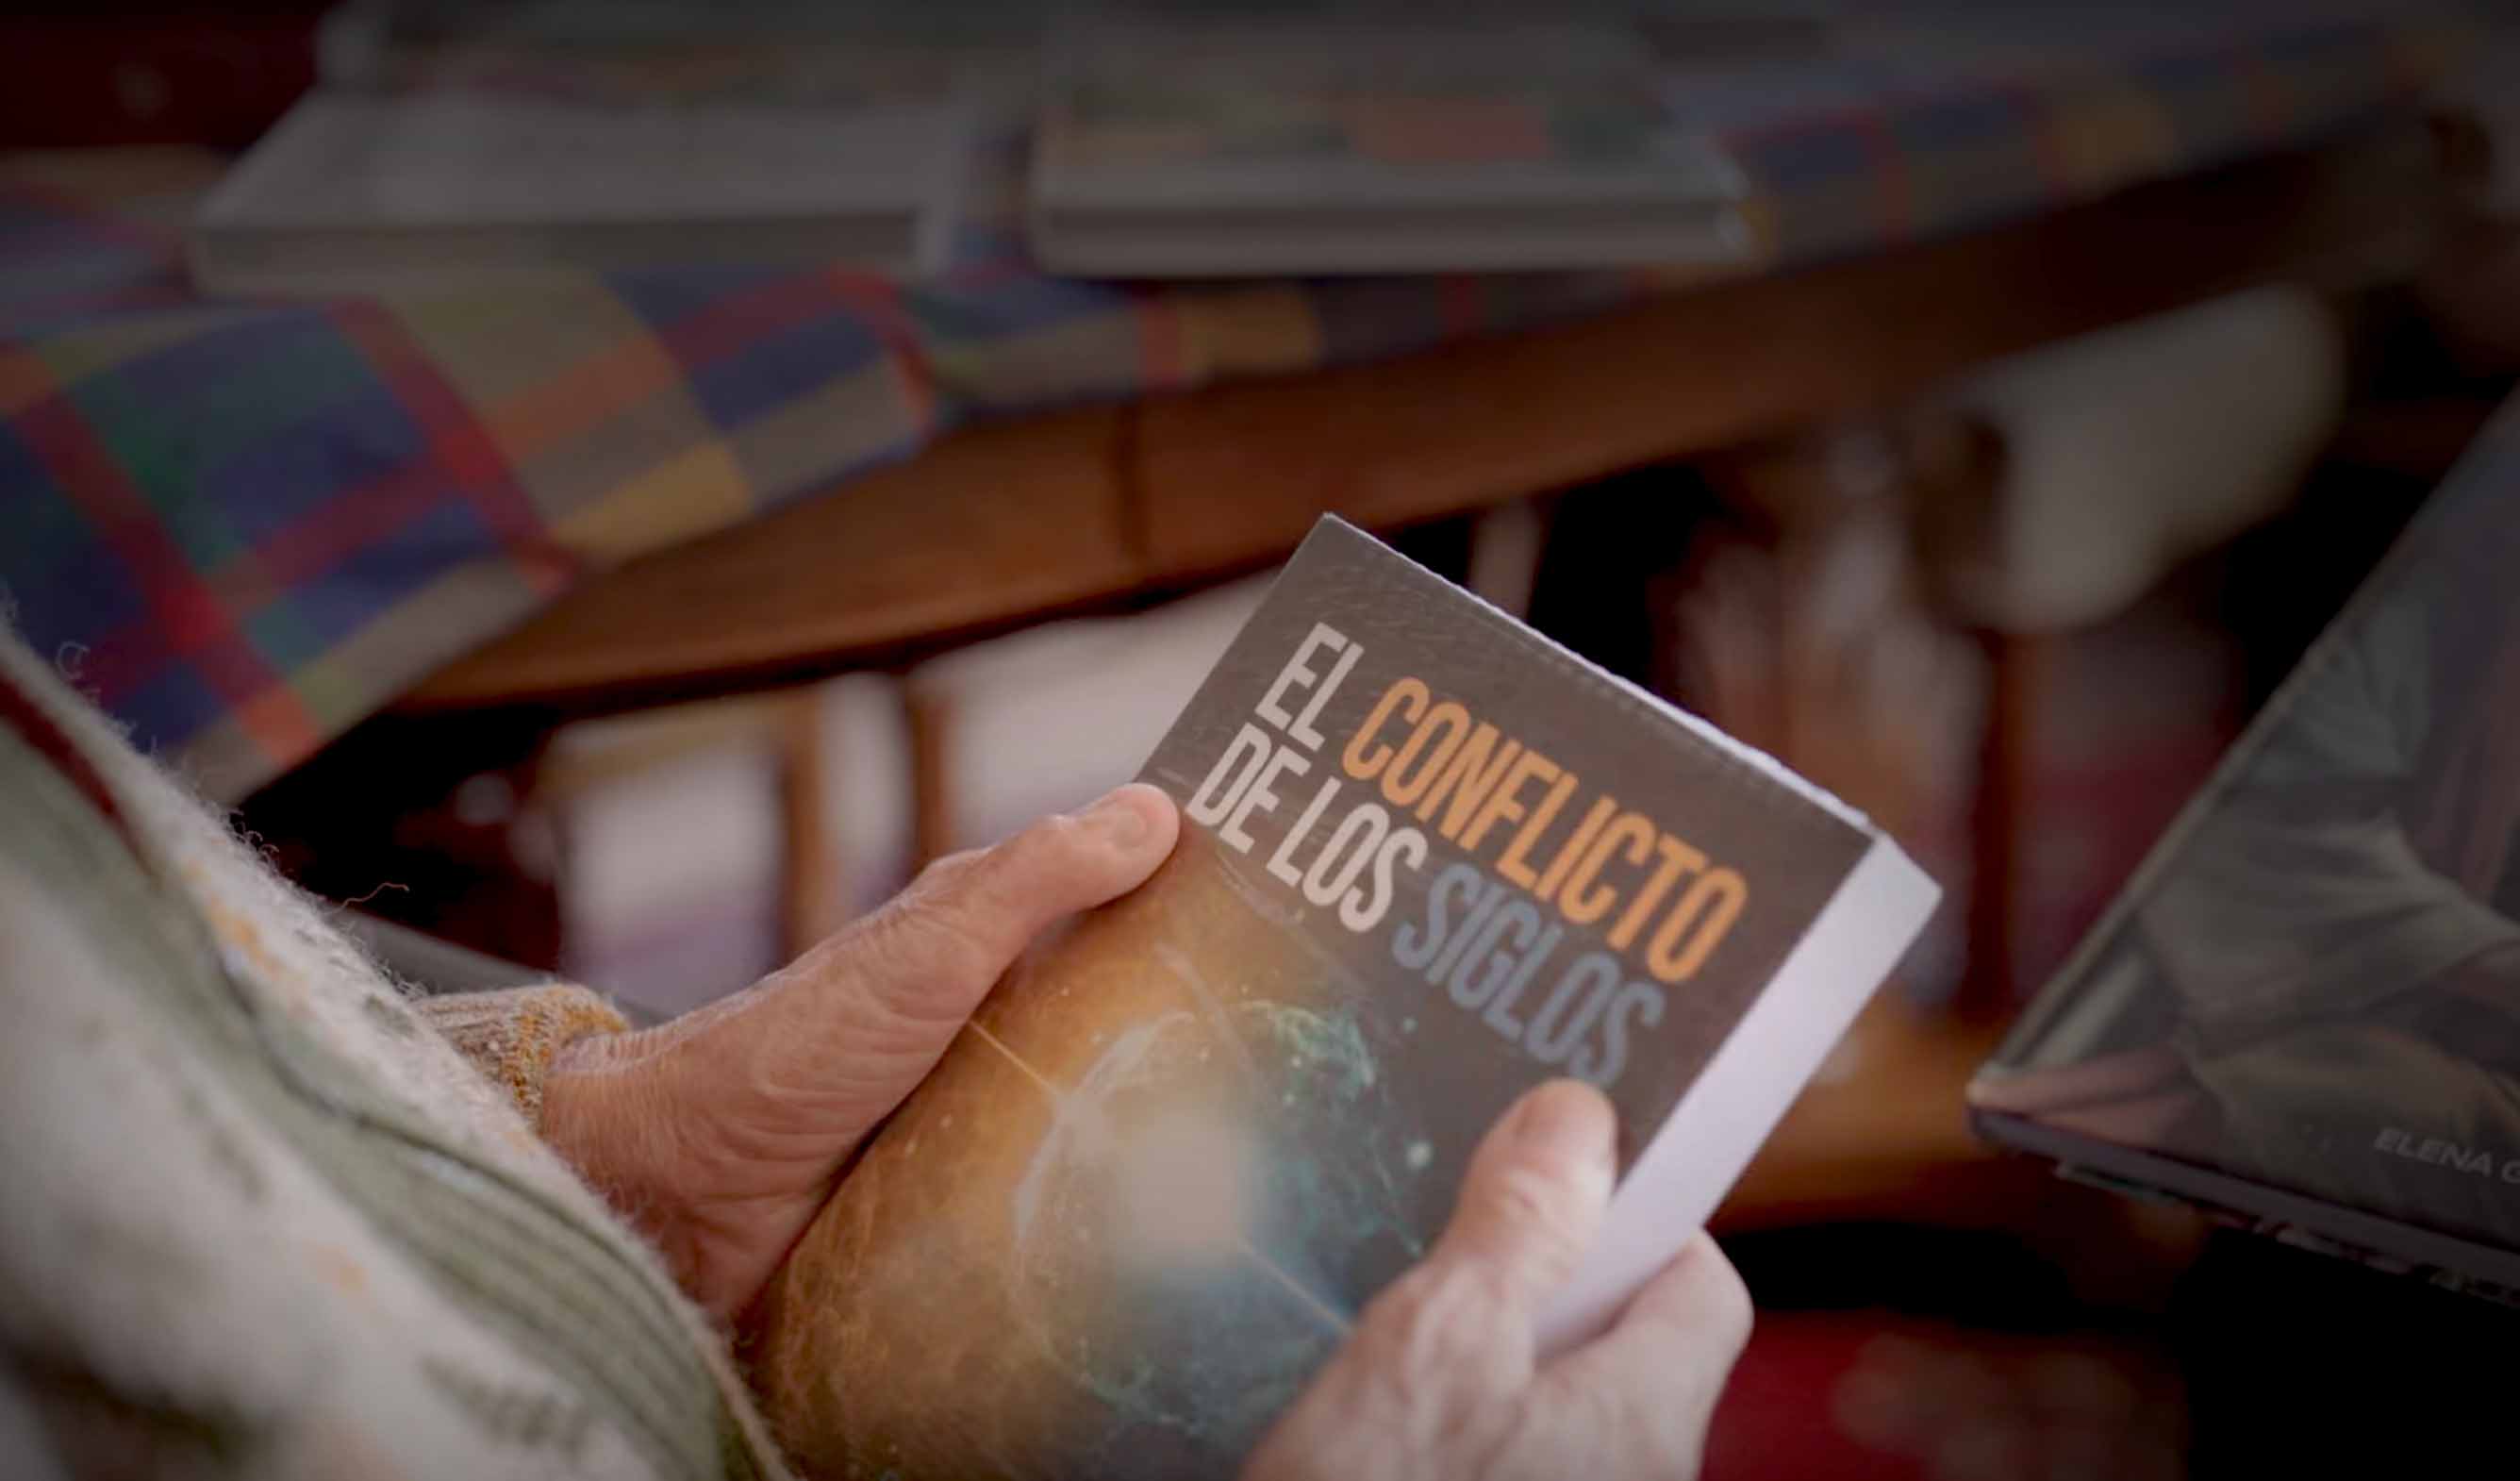 Después de 50 años volvió a sus manos el libro que cambió su vida